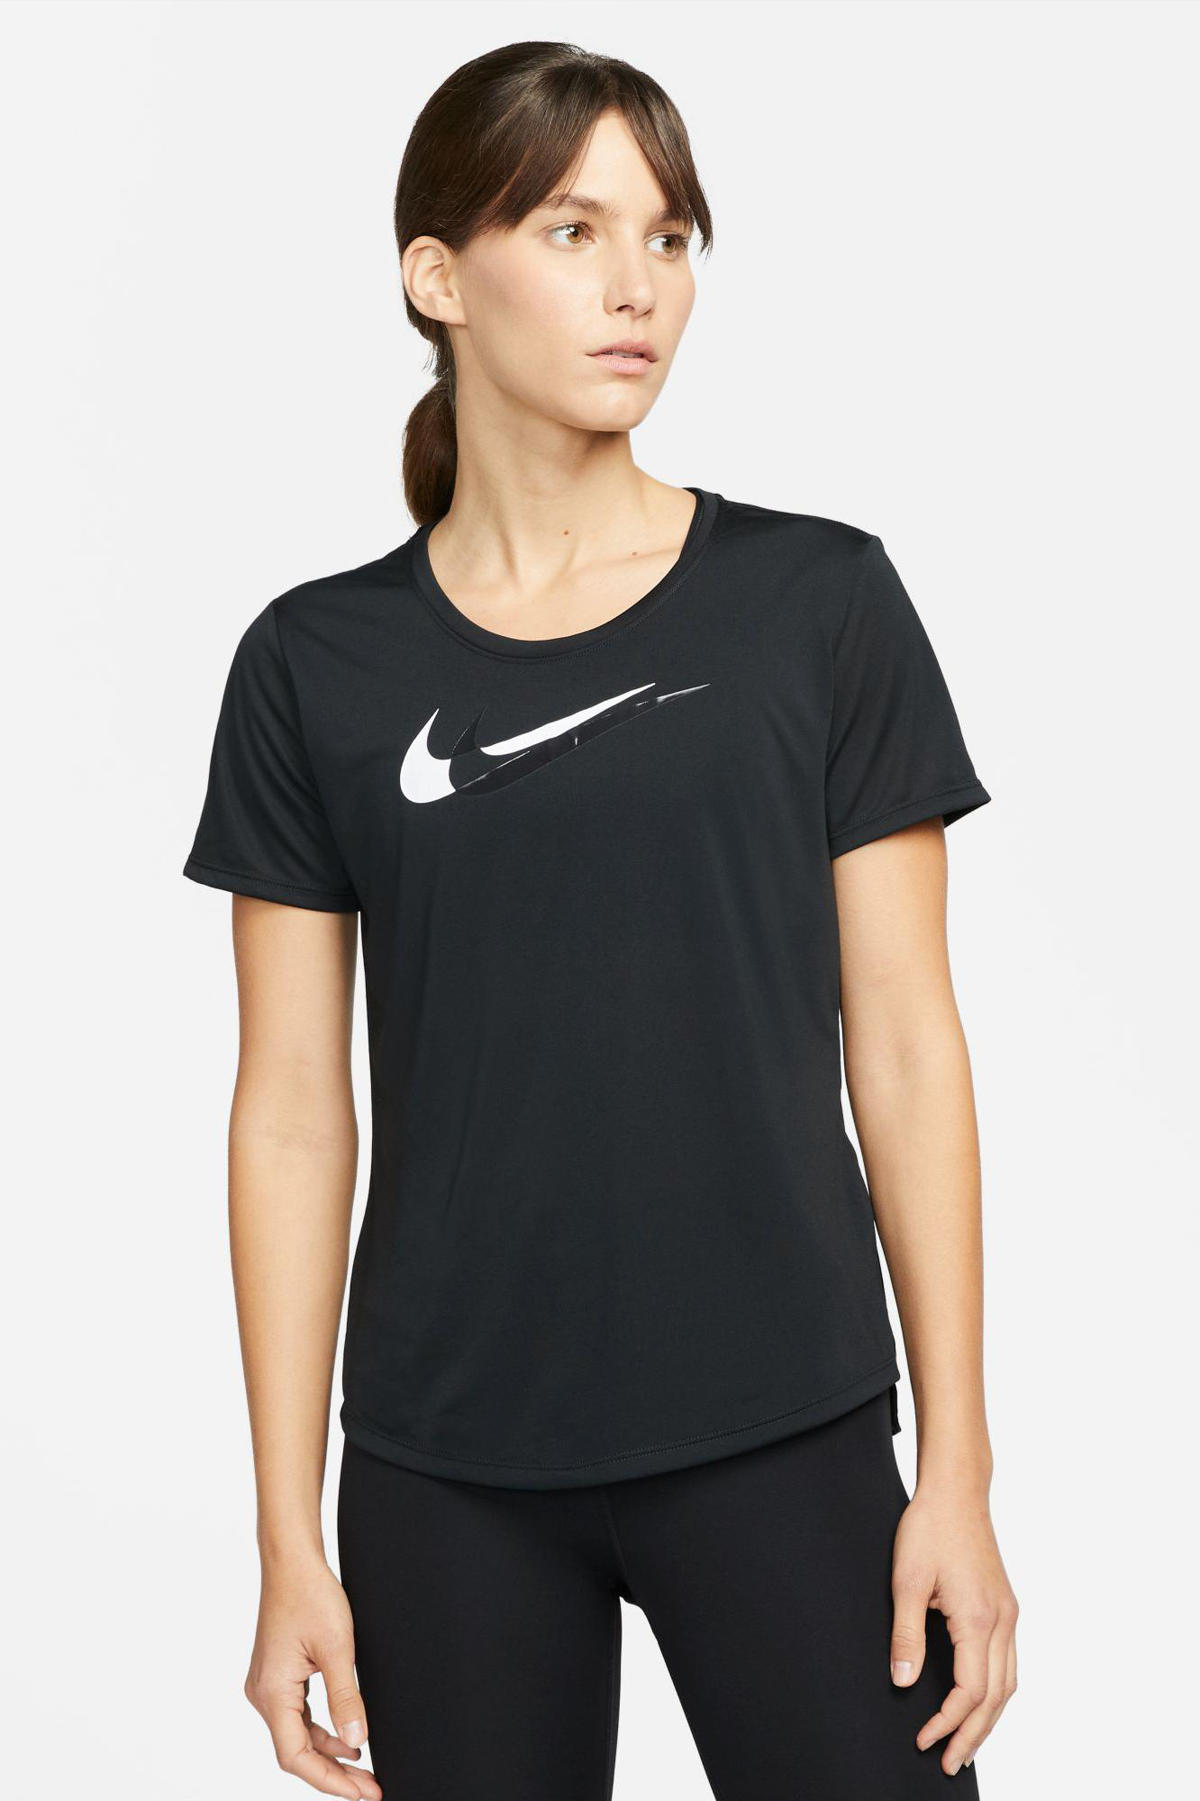 Ingang vasteland hybride Nike sportshirt zwart | wehkamp